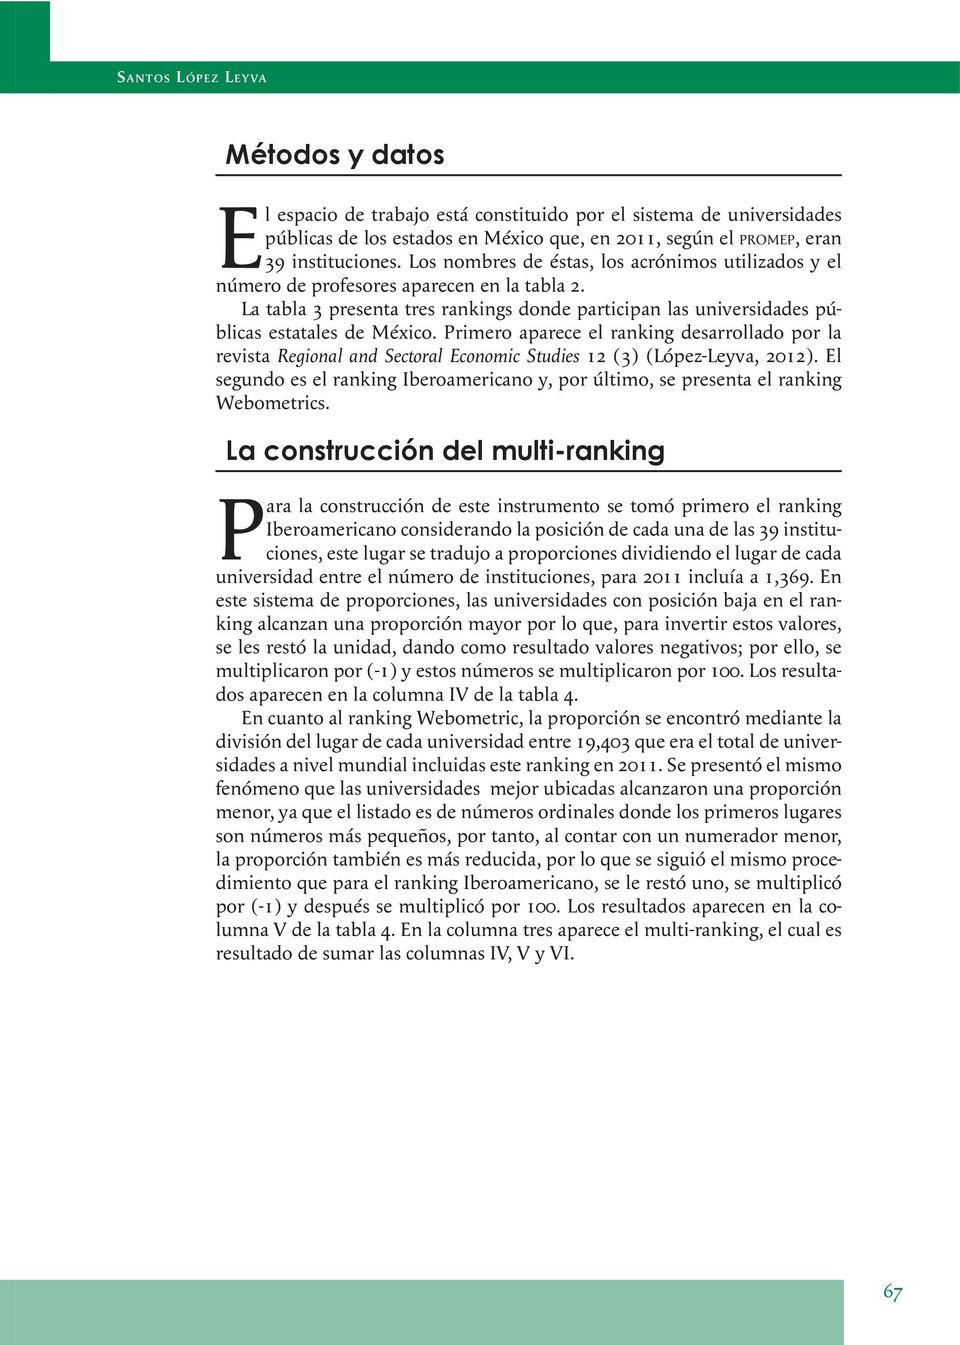 Primero aparece el ranking desarrollado por la revista Regional and Sectoral Economic Studies 12 (3) (López-Leyva, 2012).